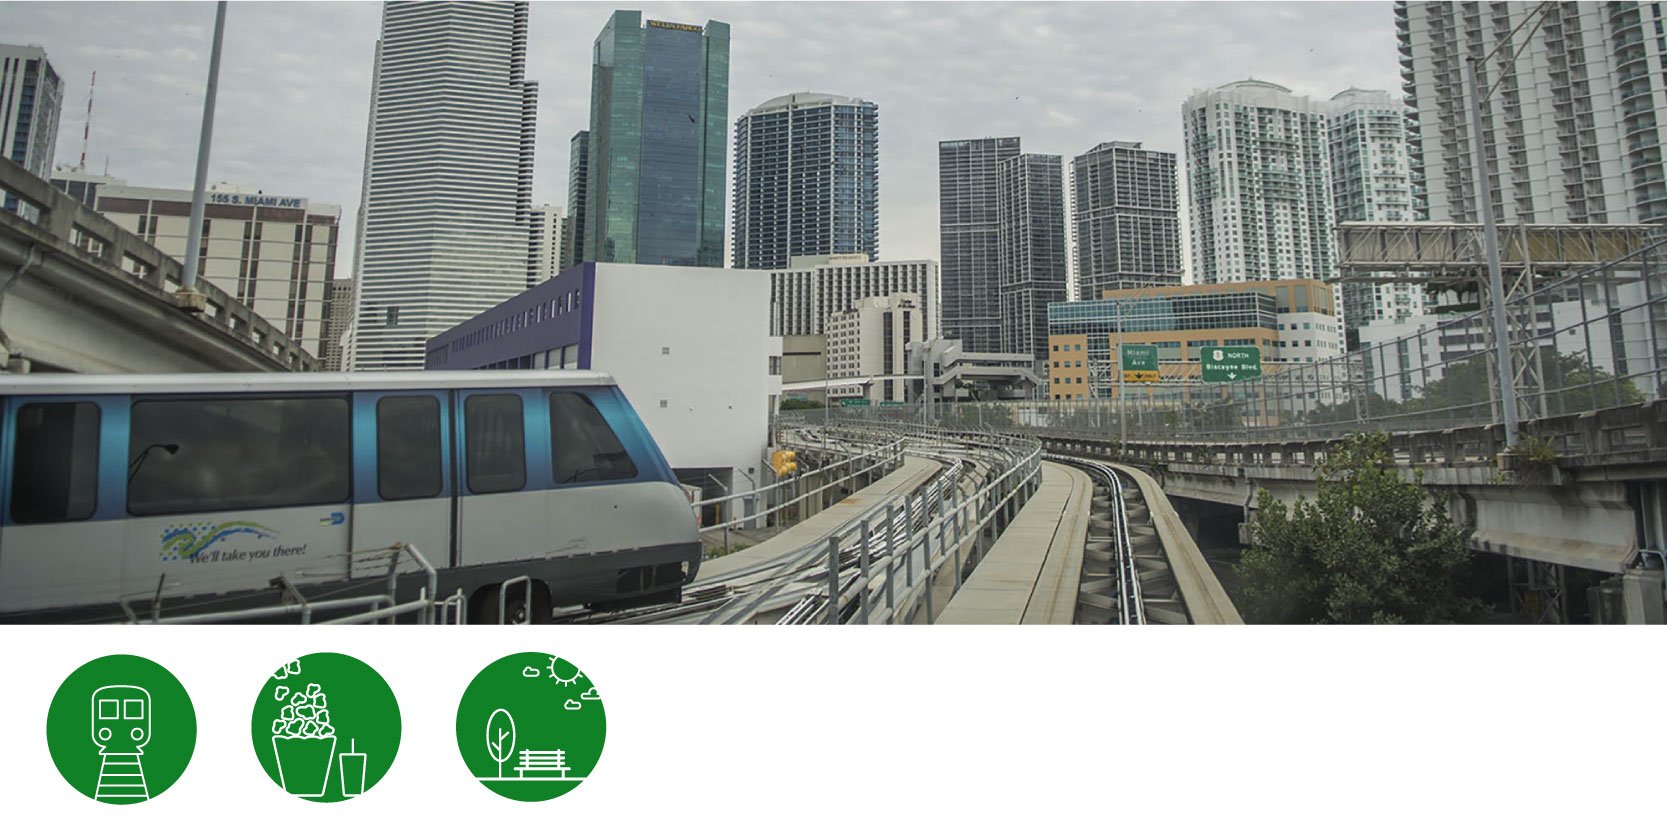 Downtown Miami with the metro rail